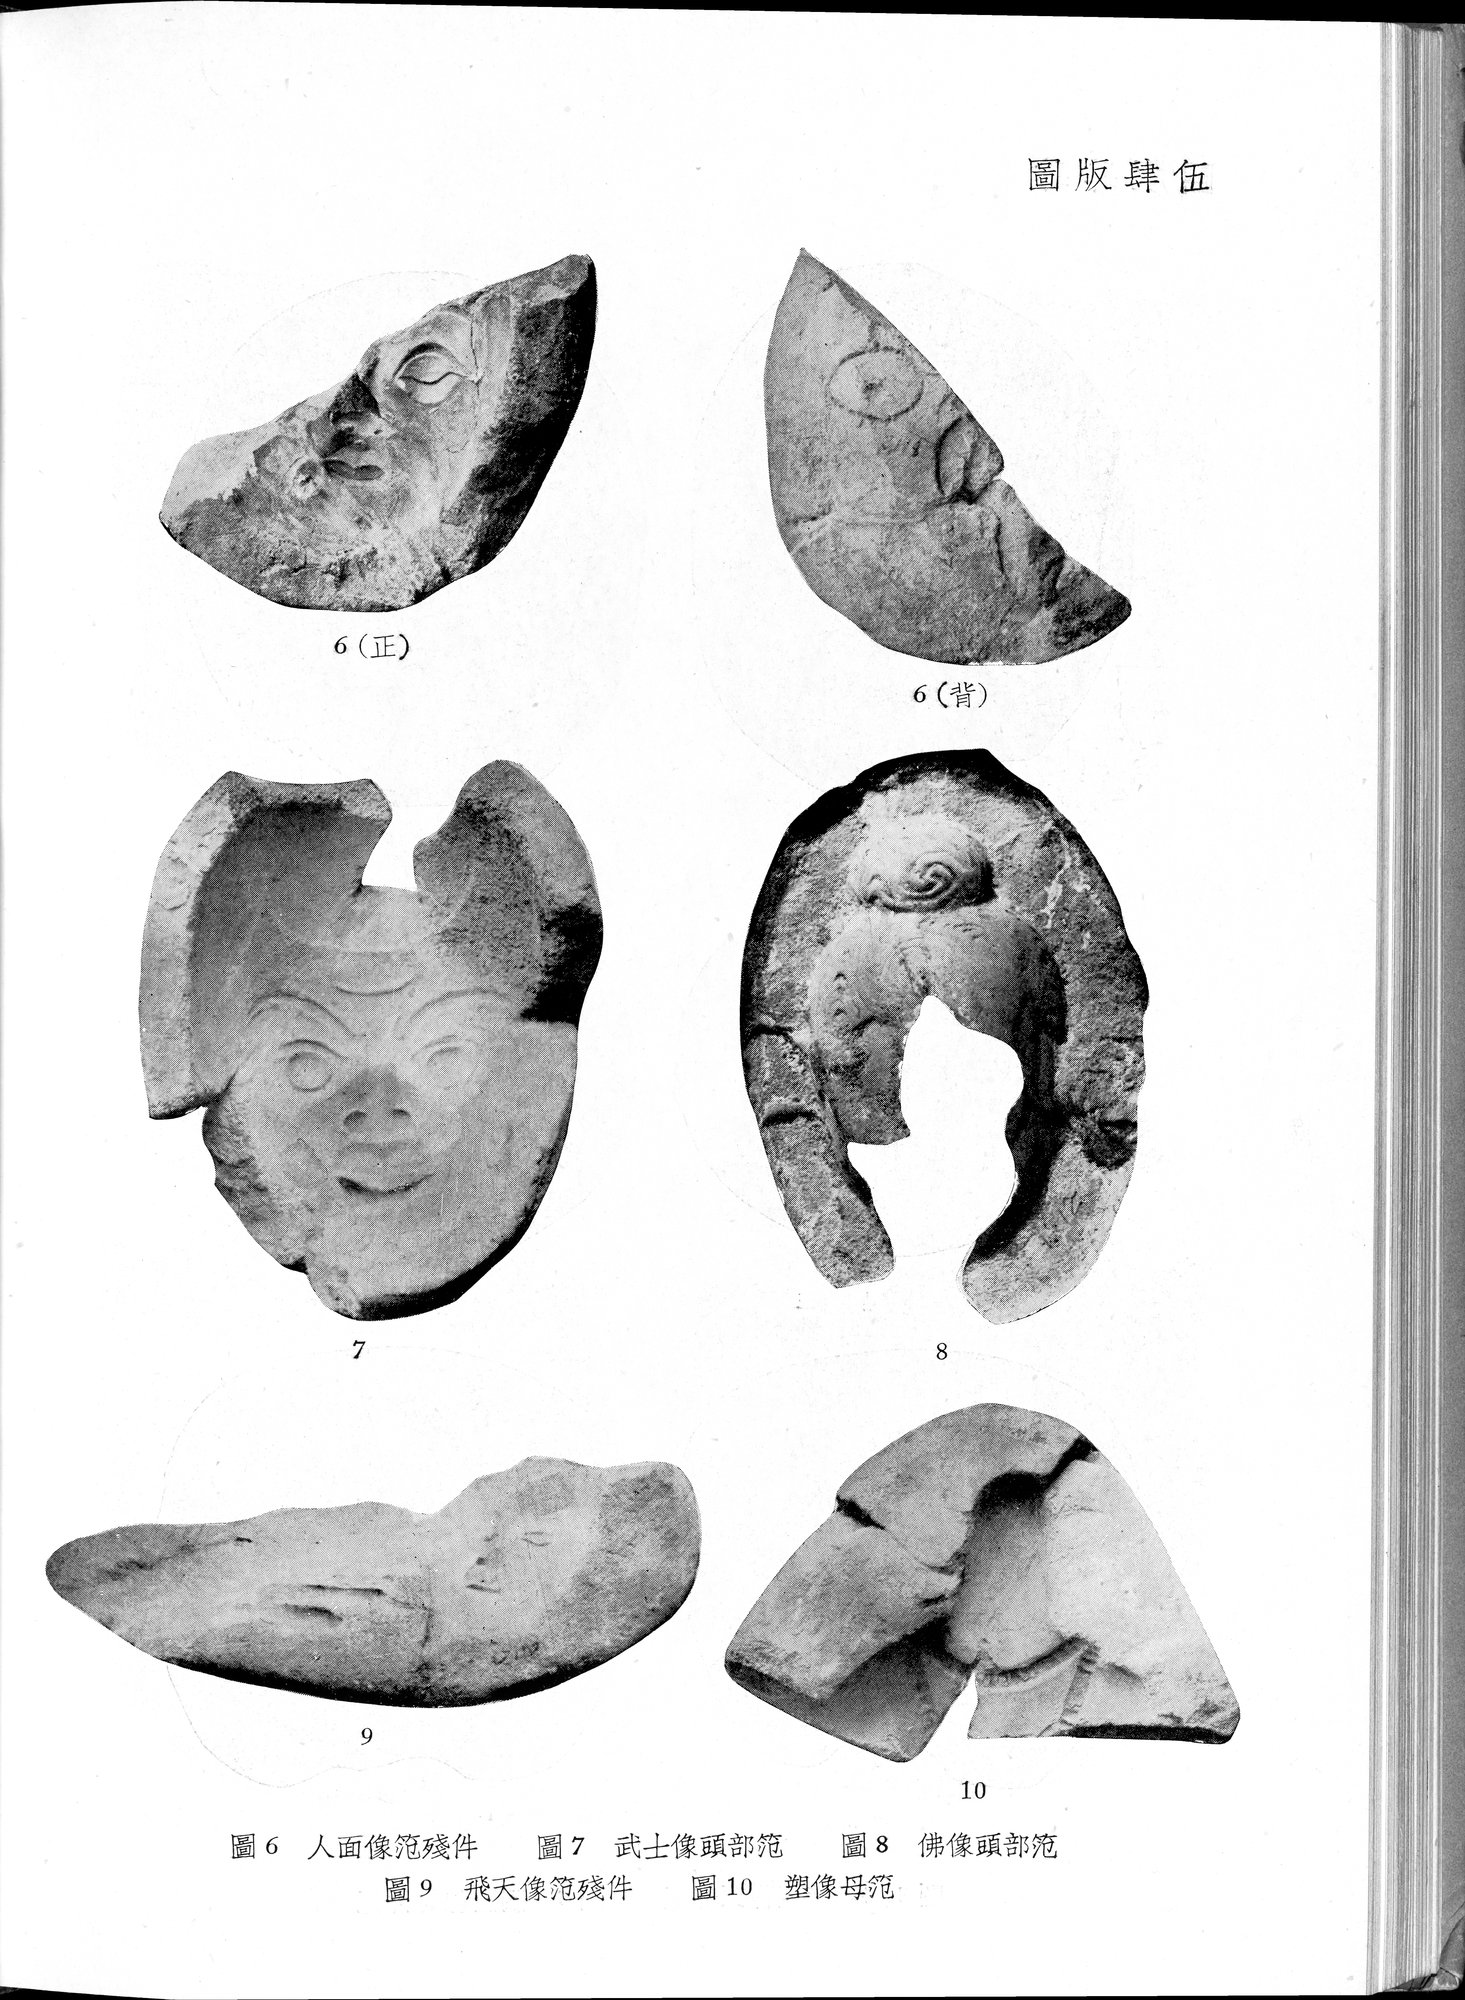 塔里木盆地考古記 : vol.1 / Page 268 (Grayscale High Resolution Image)